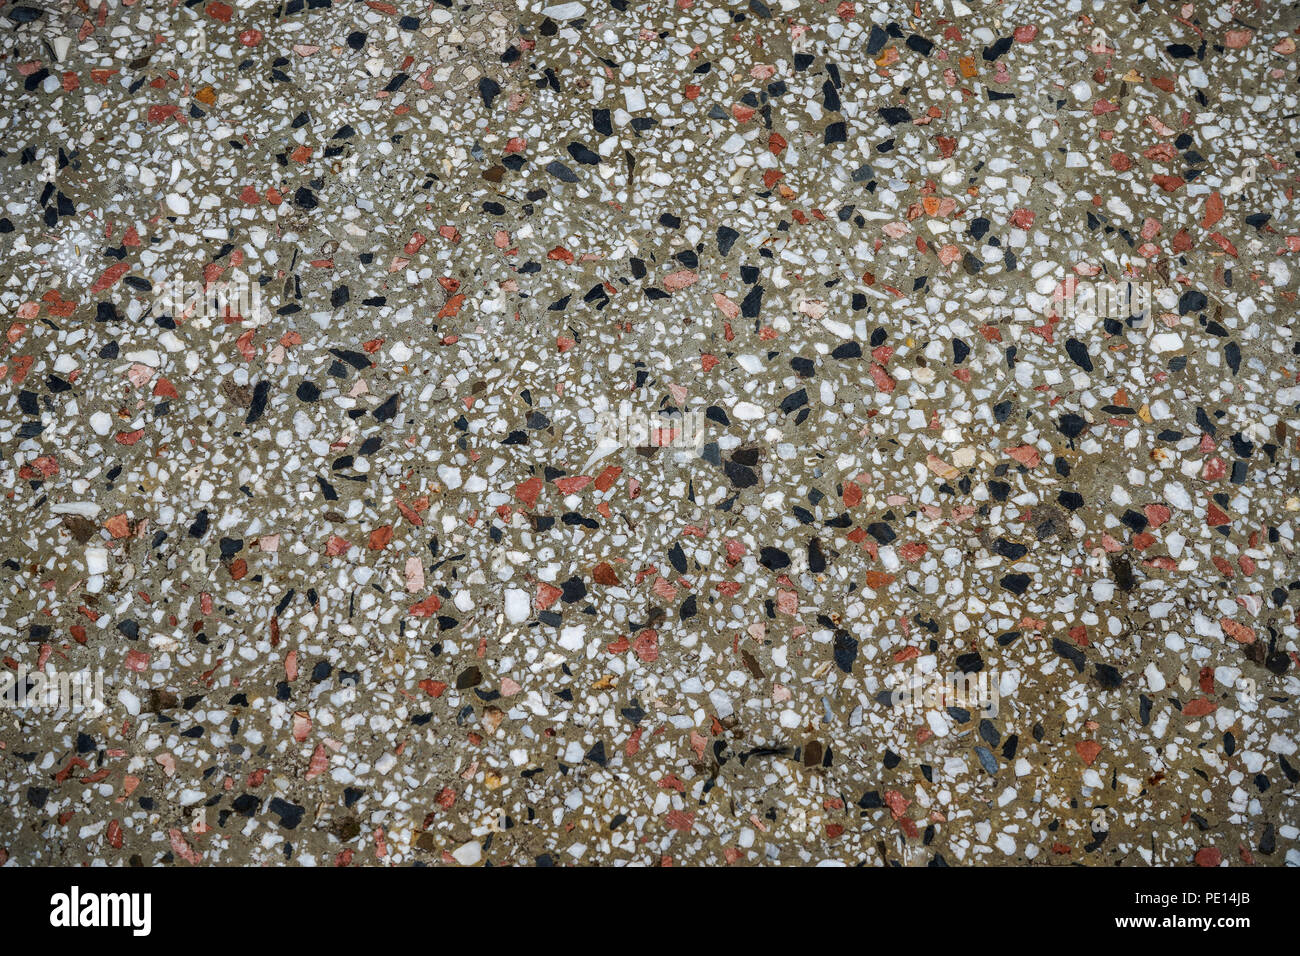 Ein Kiesel ist ein clast der Rock mit einer Partikelgröße von 2 bis 64 Millimeter bei der krumbein phi Skala der Sedimentologie. Kiesel sind in der Regel consid Stockfoto